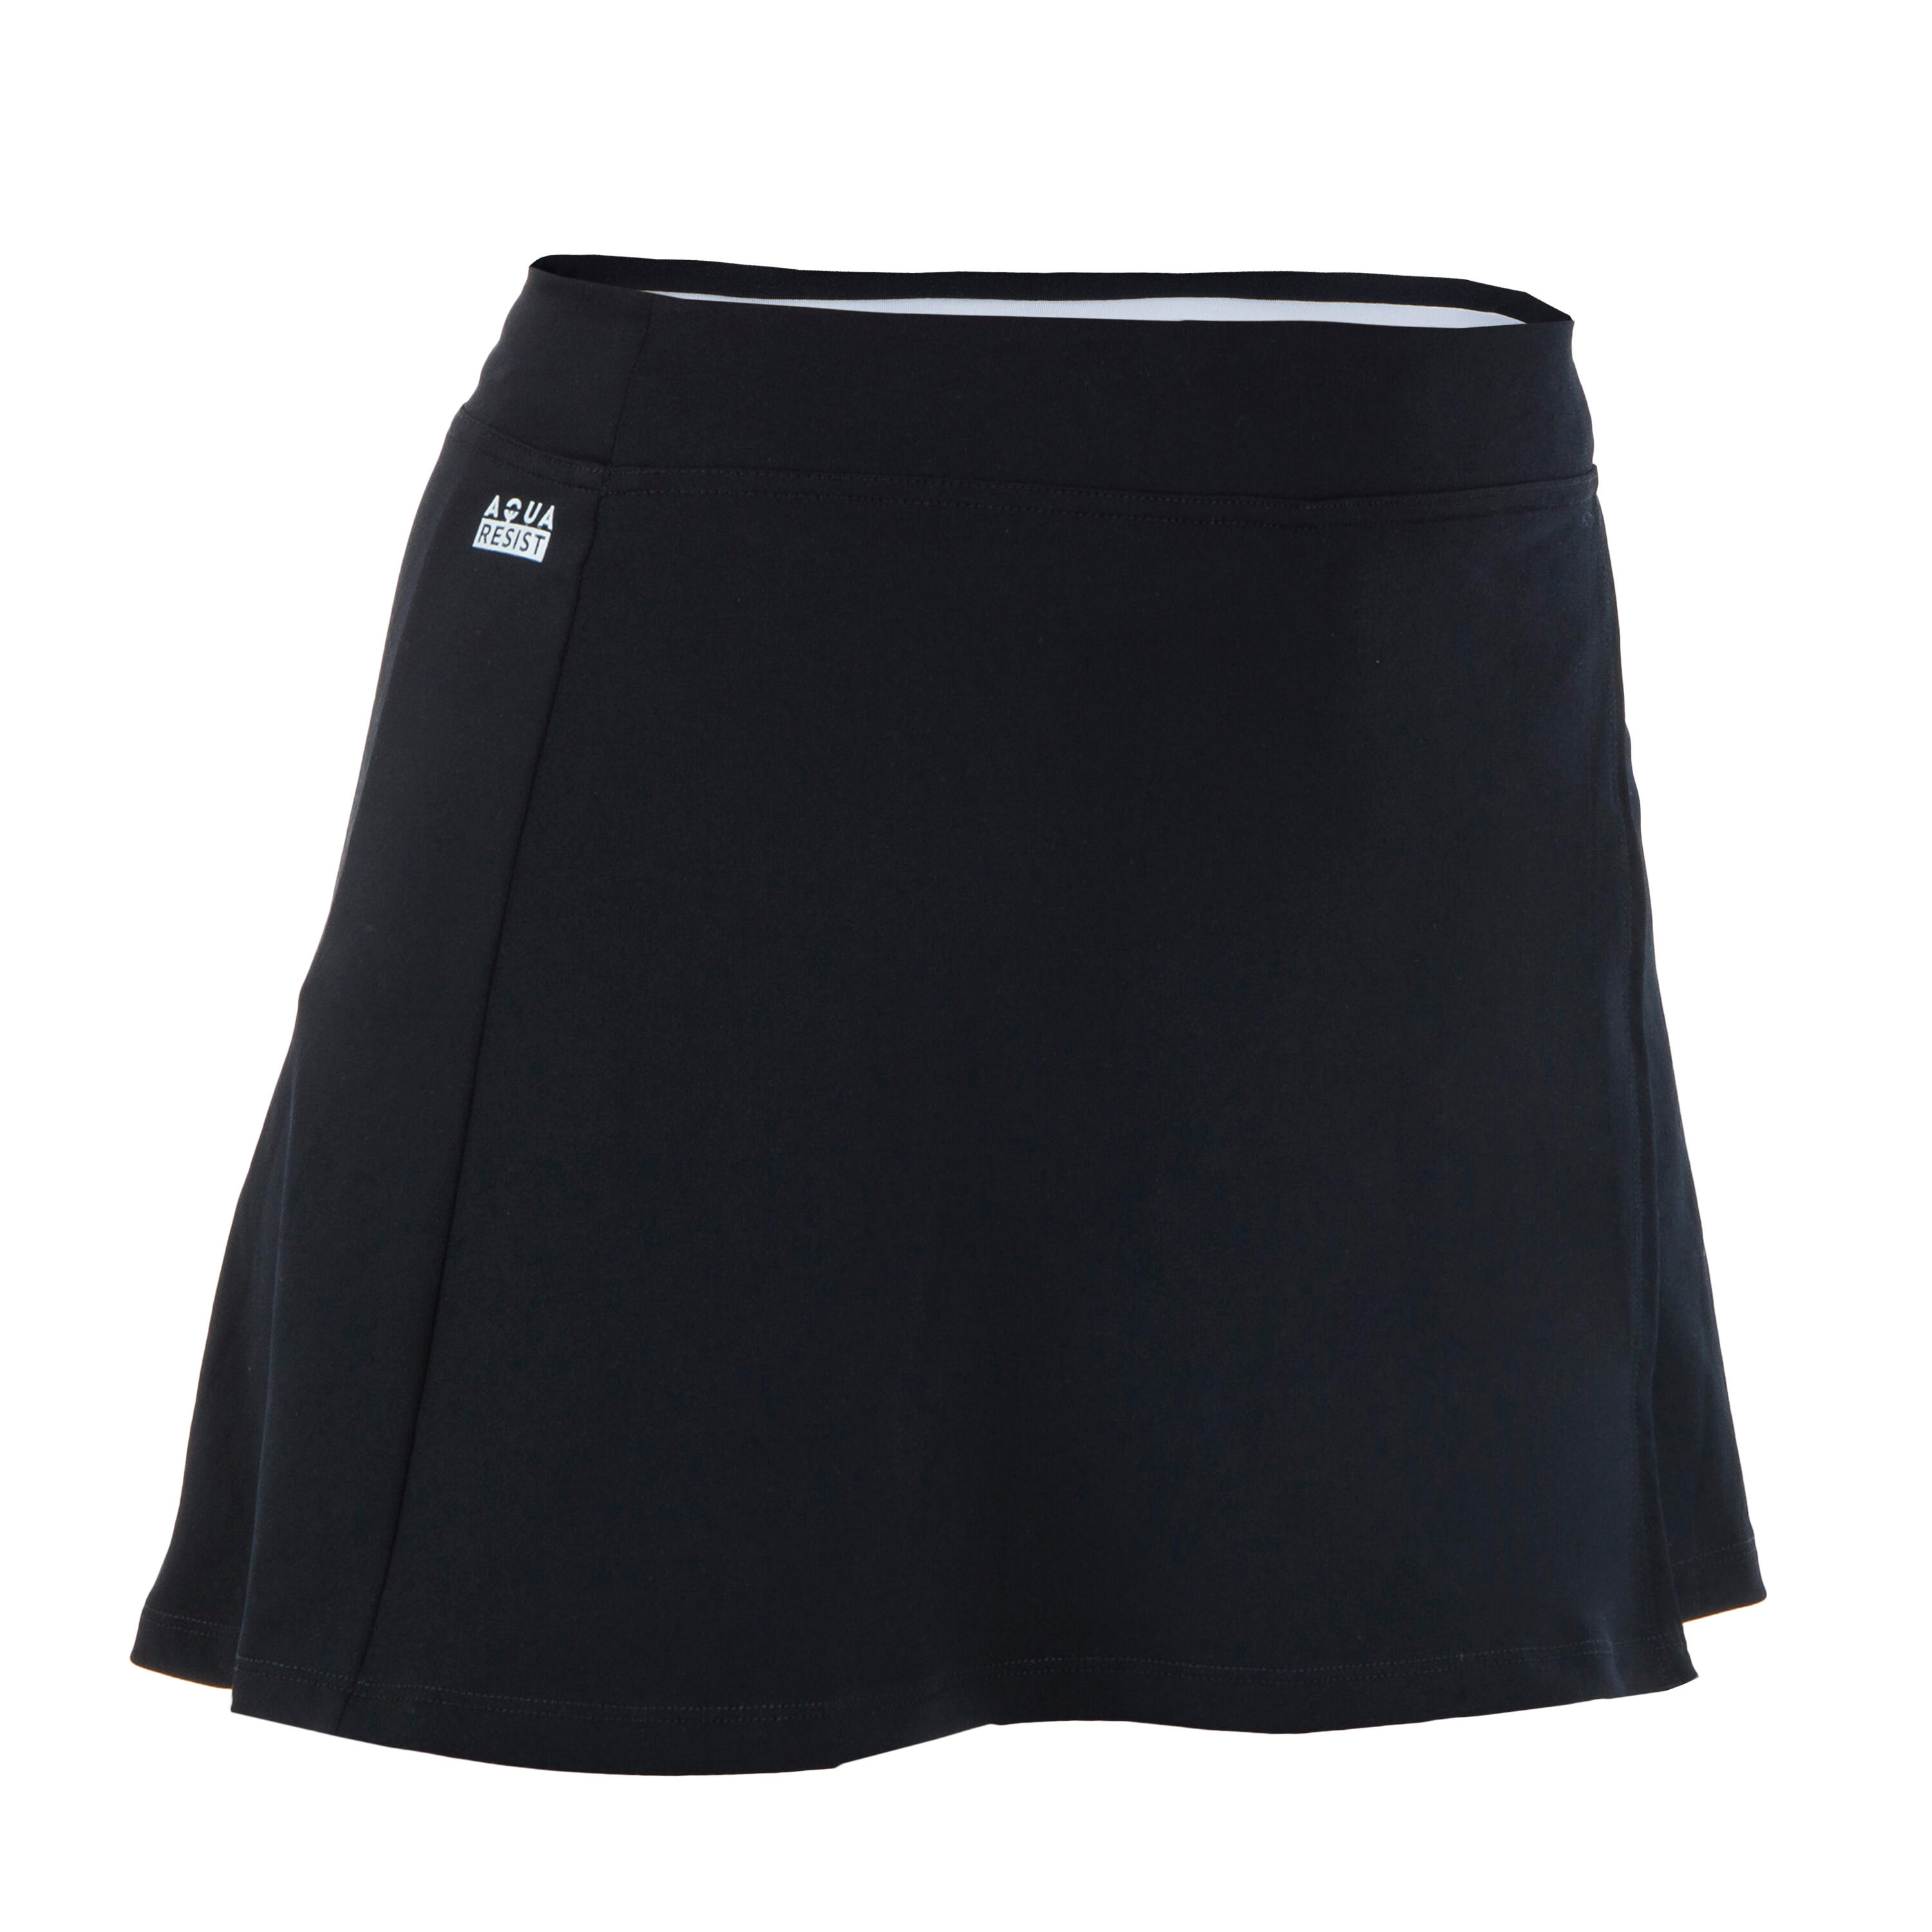 Women's Swimming skirt Una black 4/4